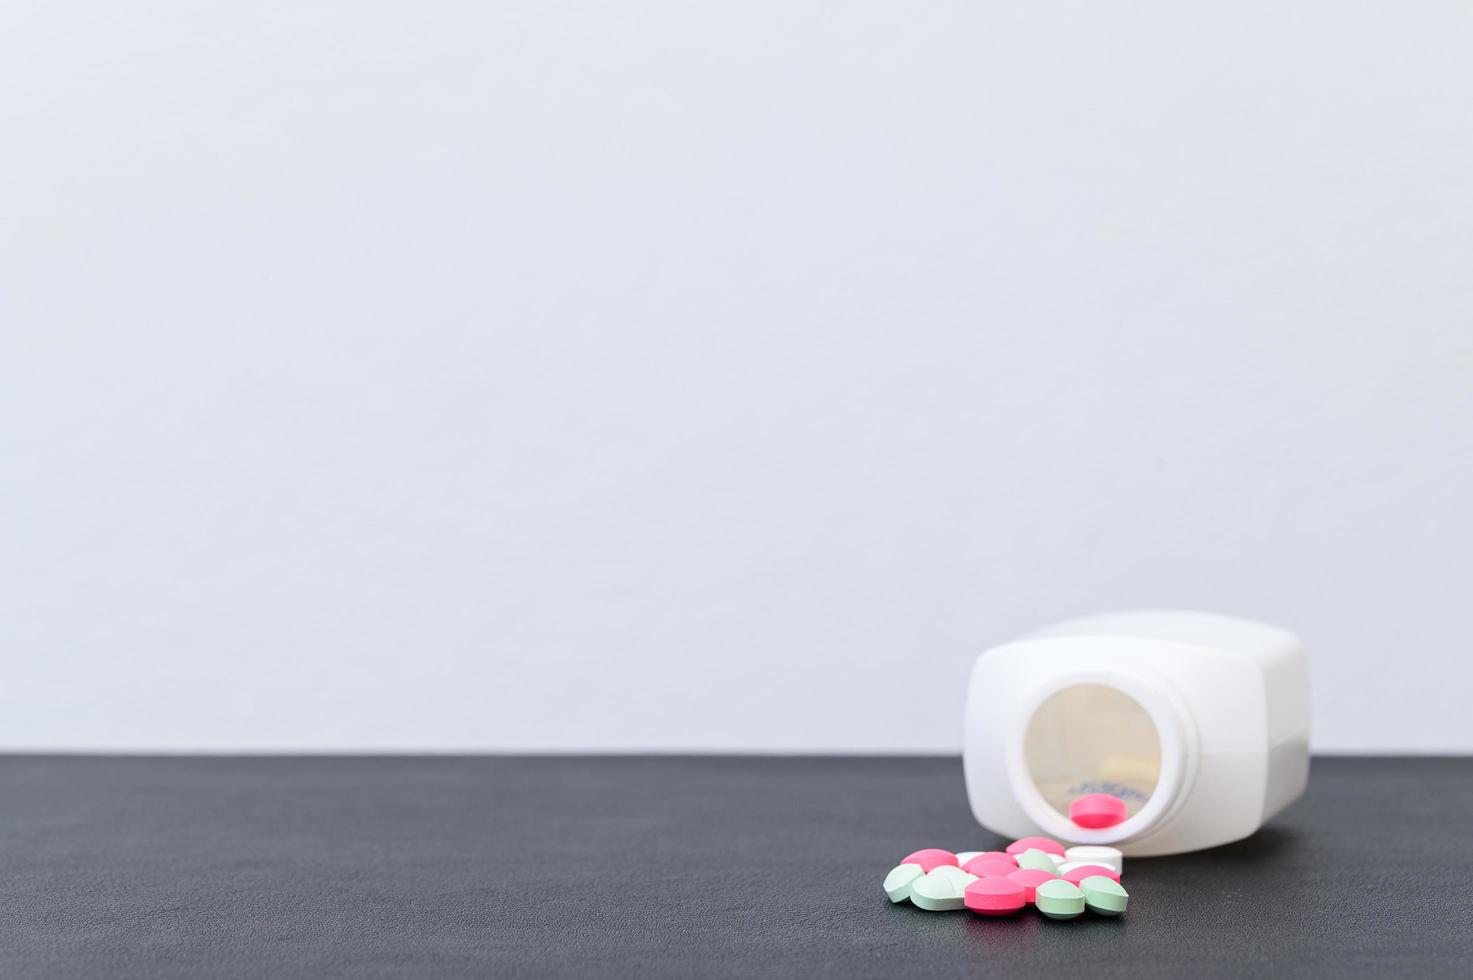 Medikamentenbehälter und Pillen auf dem Schreibtisch foto